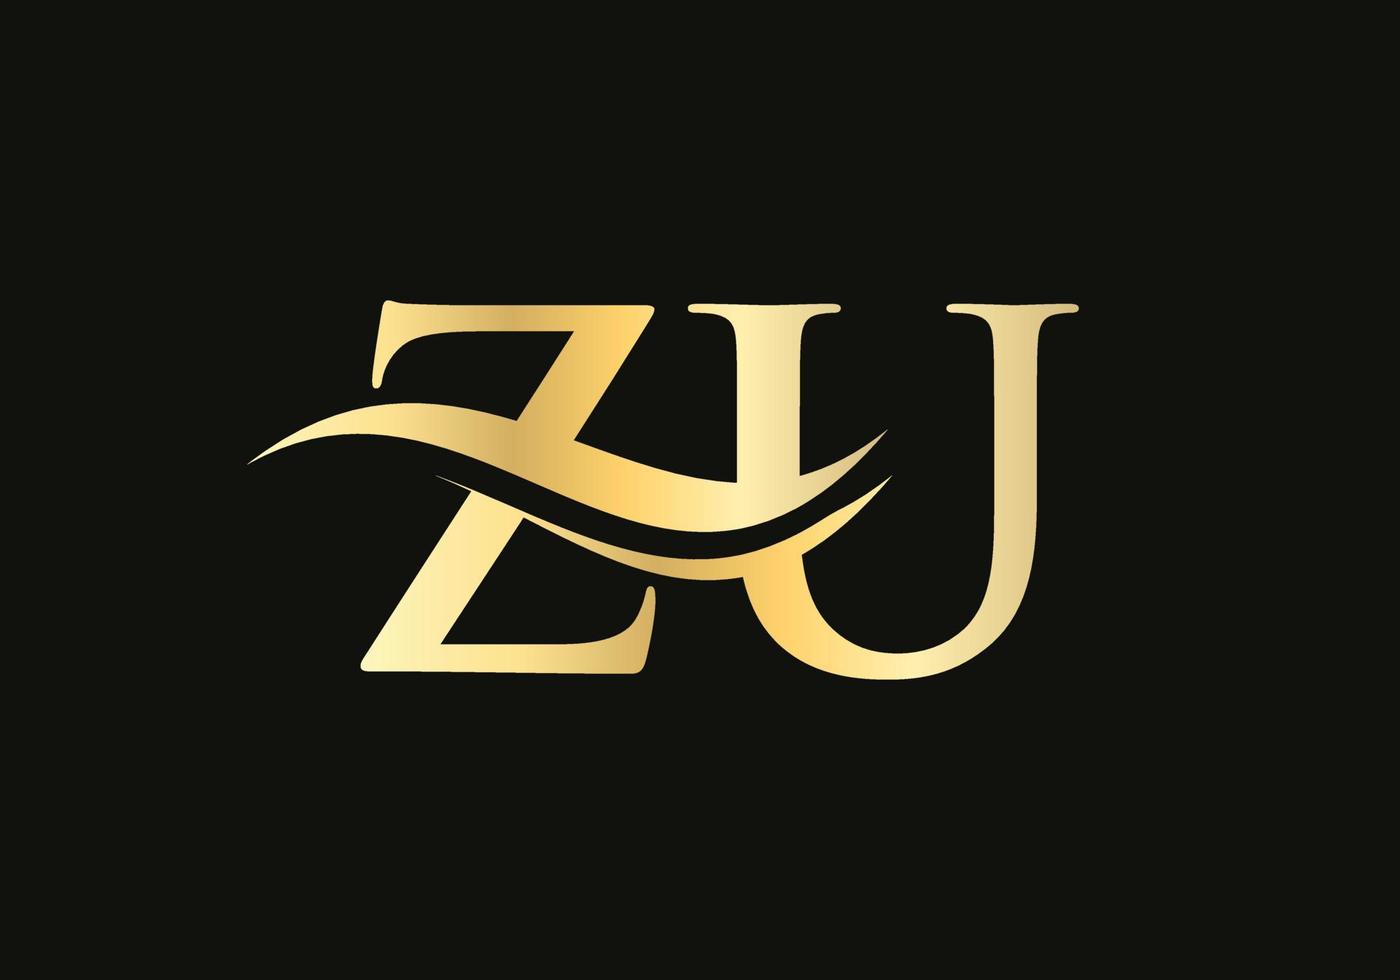 logotipo zu moderno para marcas de luxo. vetor de design de logotipo comercial de letra zu inicial